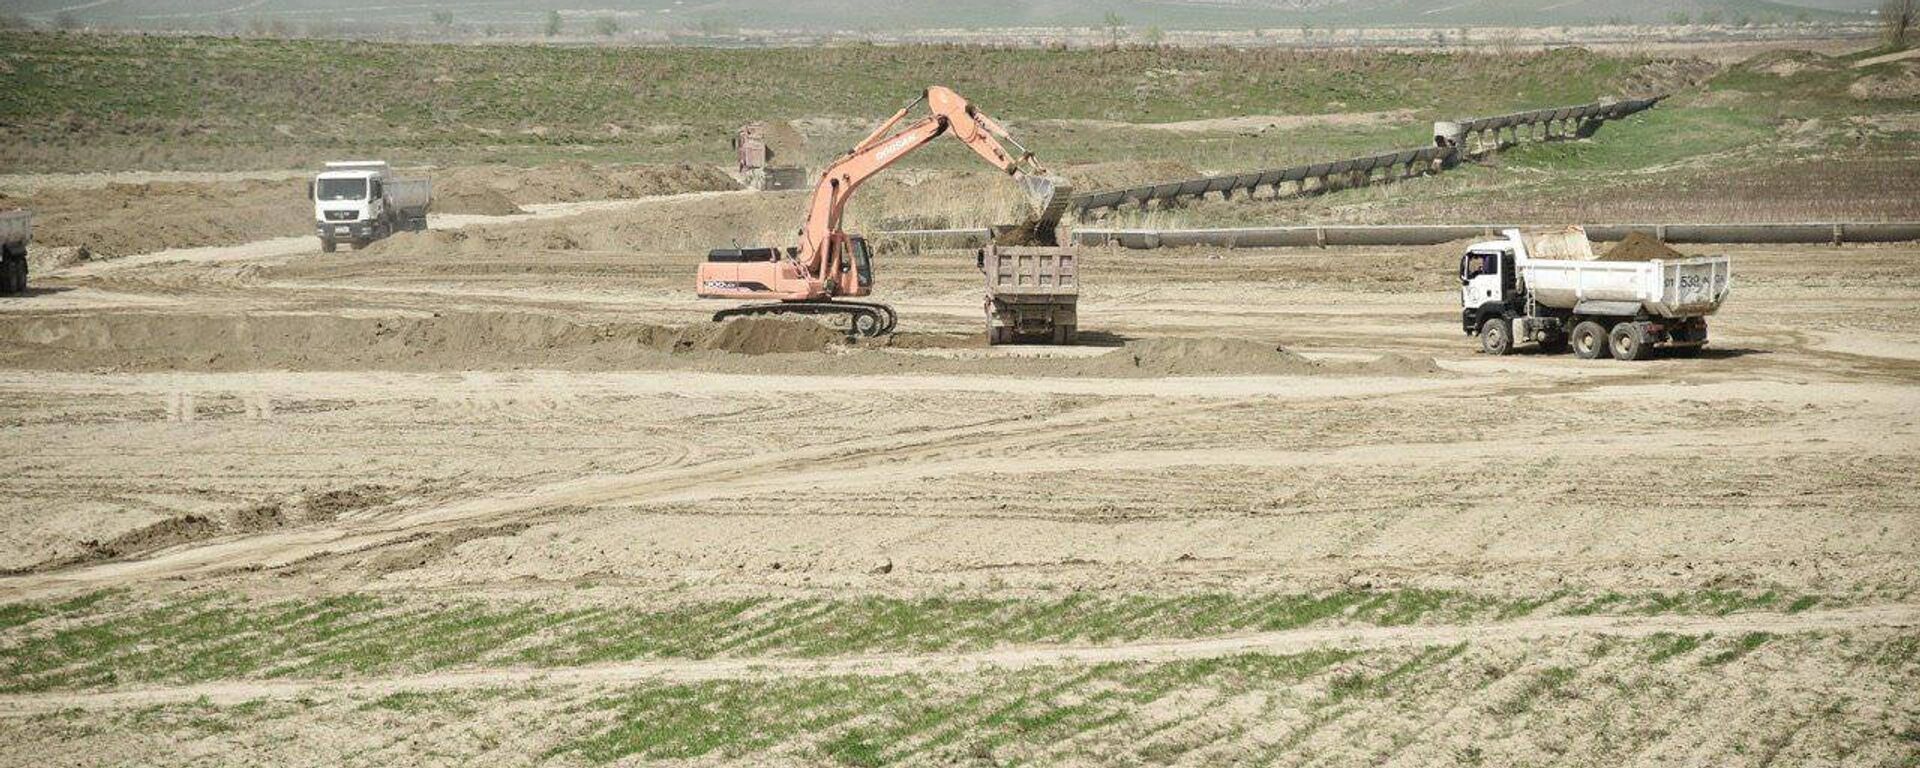 Строительство водохранилища в Зафарабадском районе Джизакской области - Sputnik Узбекистан, 1920, 06.04.2021